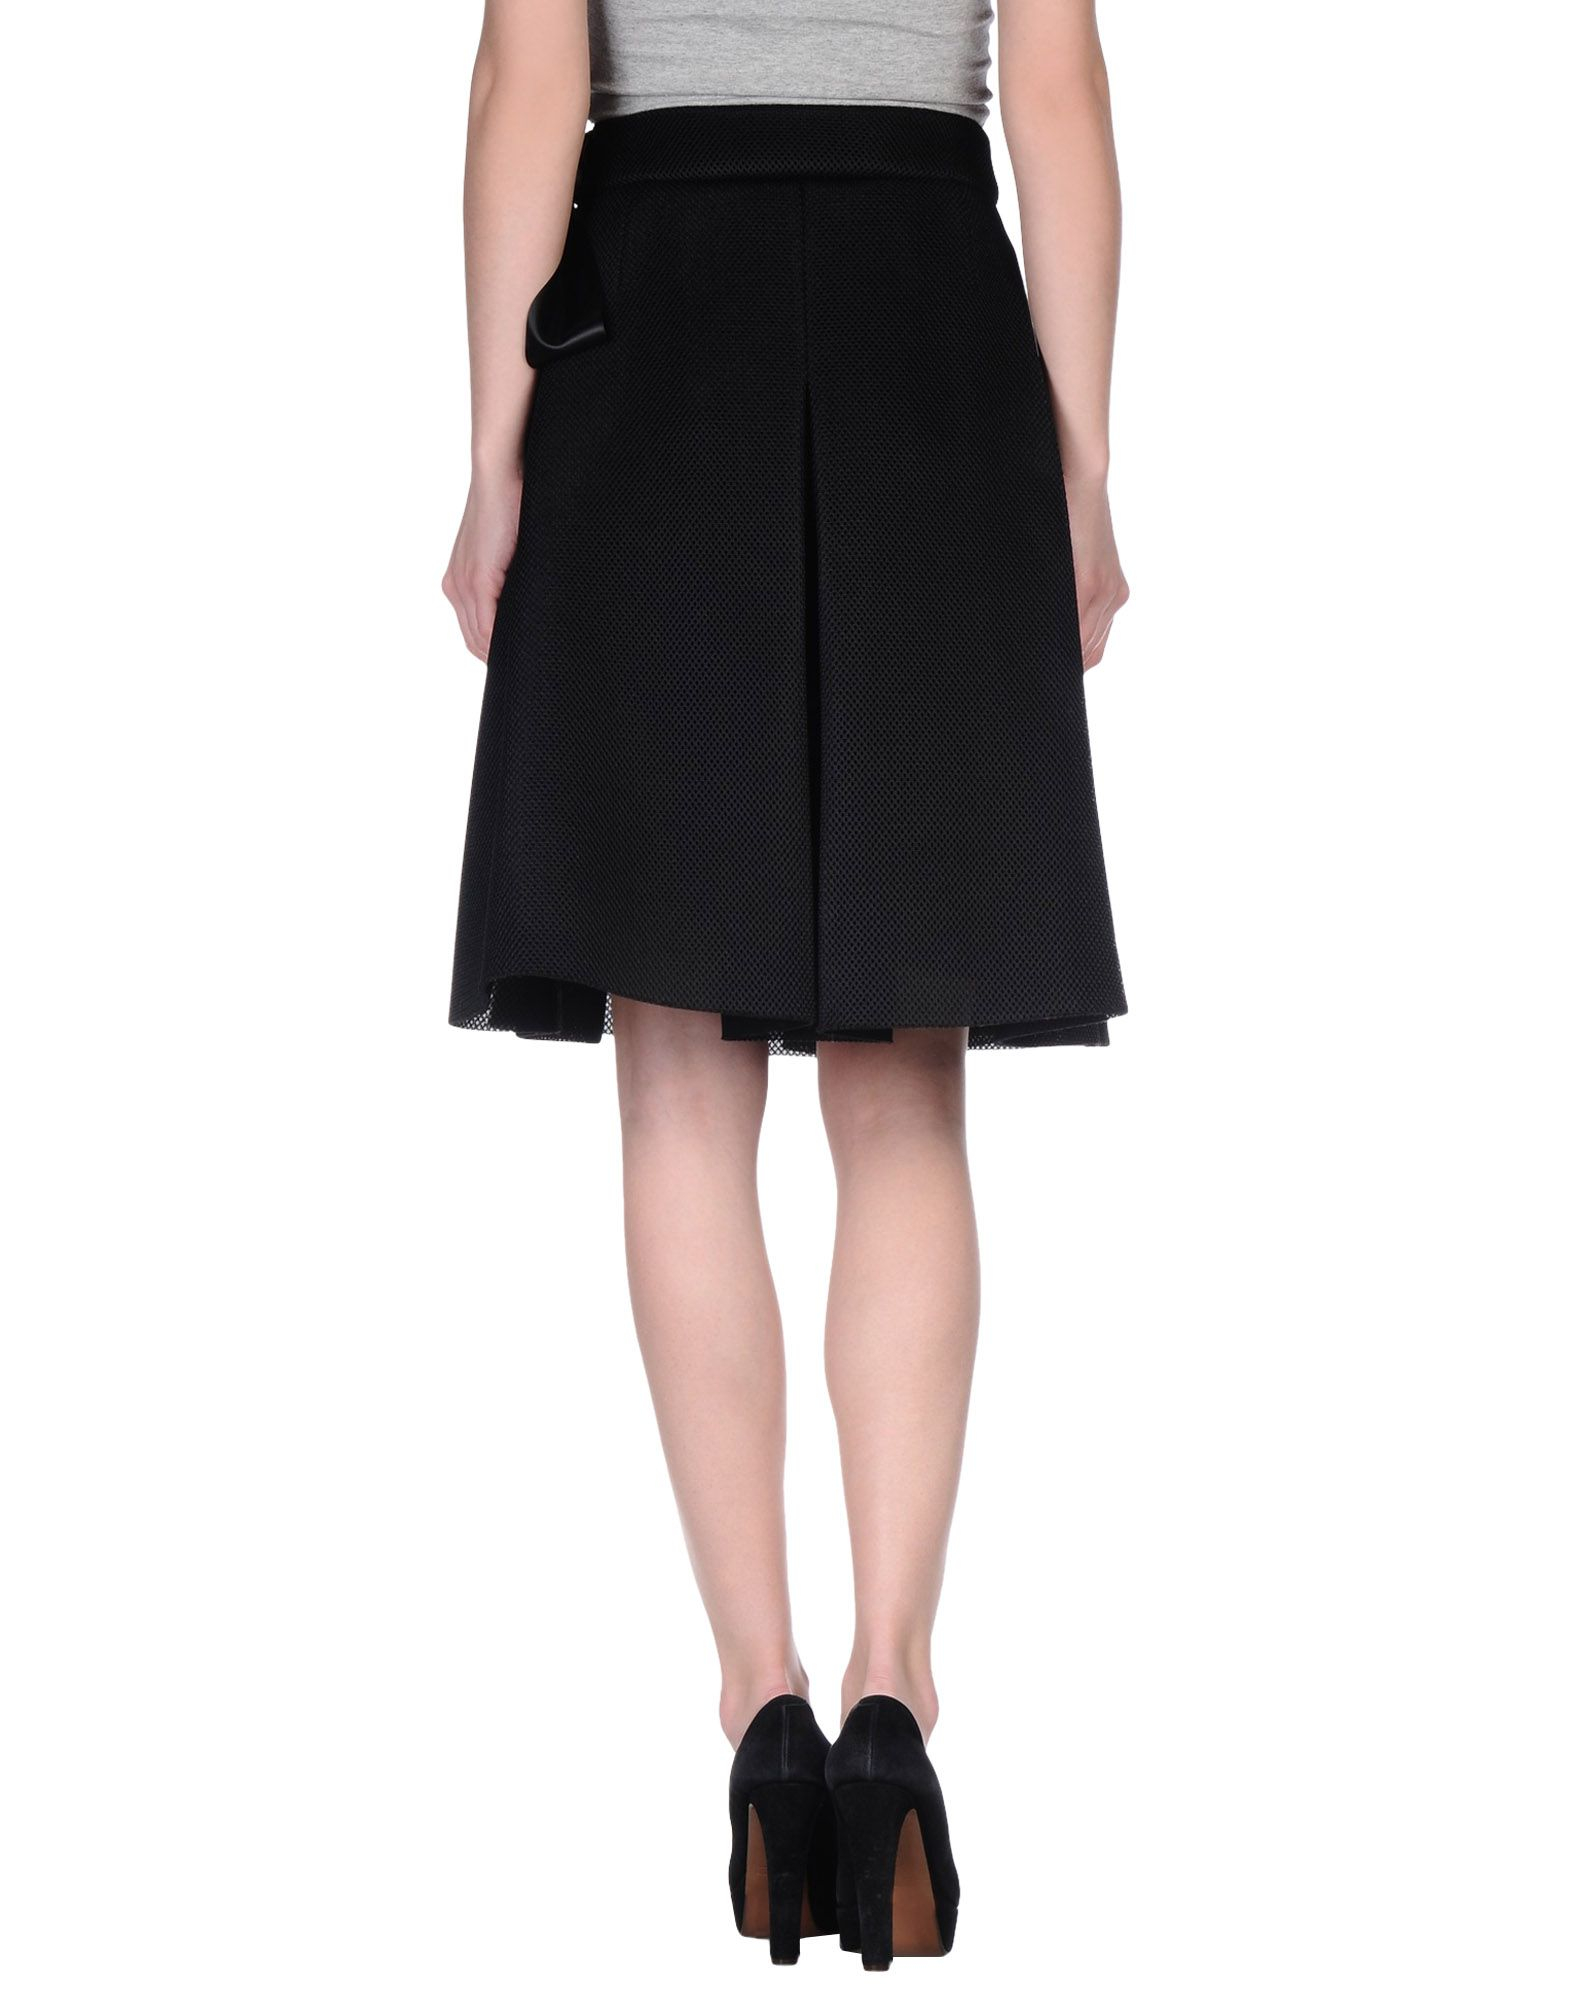 Lyst - Brigitte Bardot Knee Length Skirt in Black